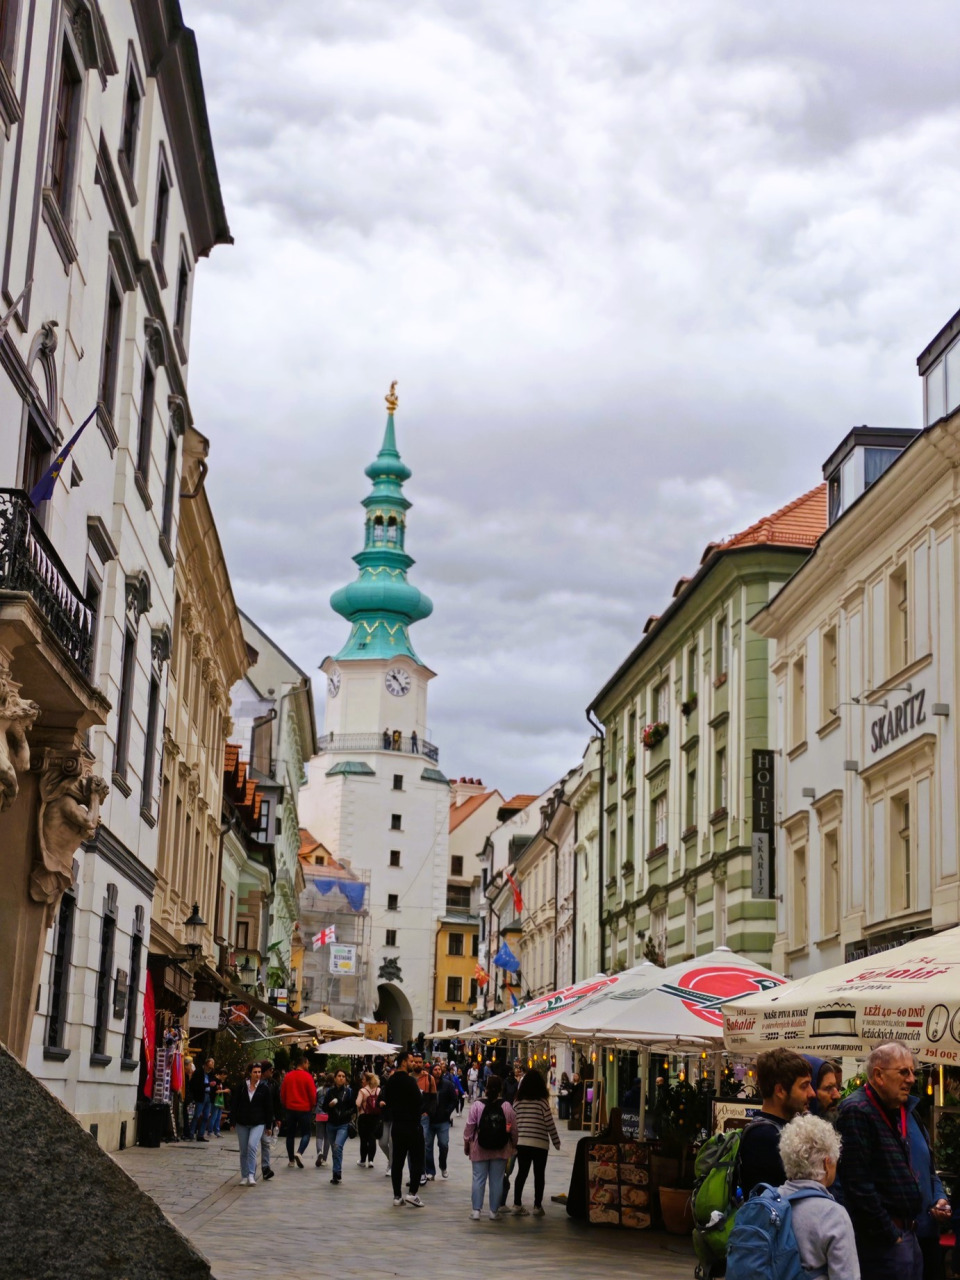 ■迈克尔门 （Michael's Gate） 和圣迈克尔塔街（Michalska Ulica） 是布拉迪斯拉发的热门景点之一。前者是布拉迪斯拉发著名的地标之一，也是如今唯一尚存的古城门。后者是古朴的老街道，两旁林立着许多商店和餐馆，是众多当地人和游客聚集在此适合玩乐的地方。